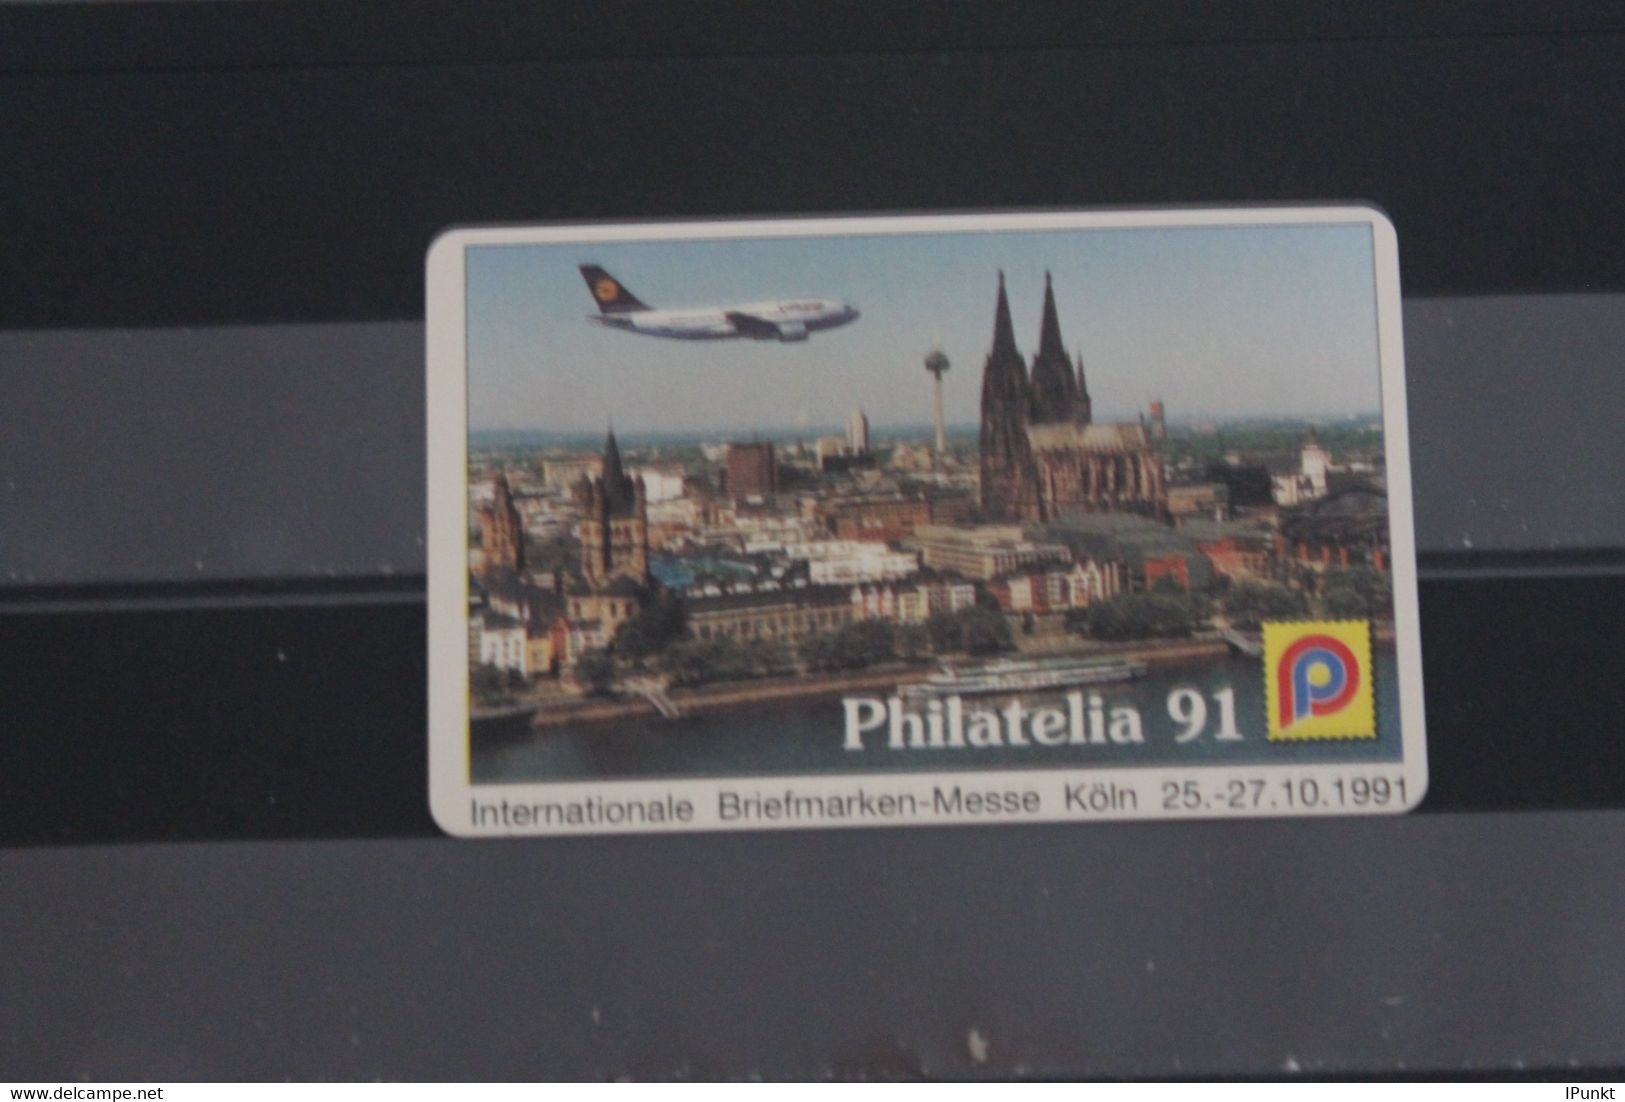 Deutschland 1991; Philatelia 91 Köln; K 605 - V-Series : VIP Y Tarjetas De Visita